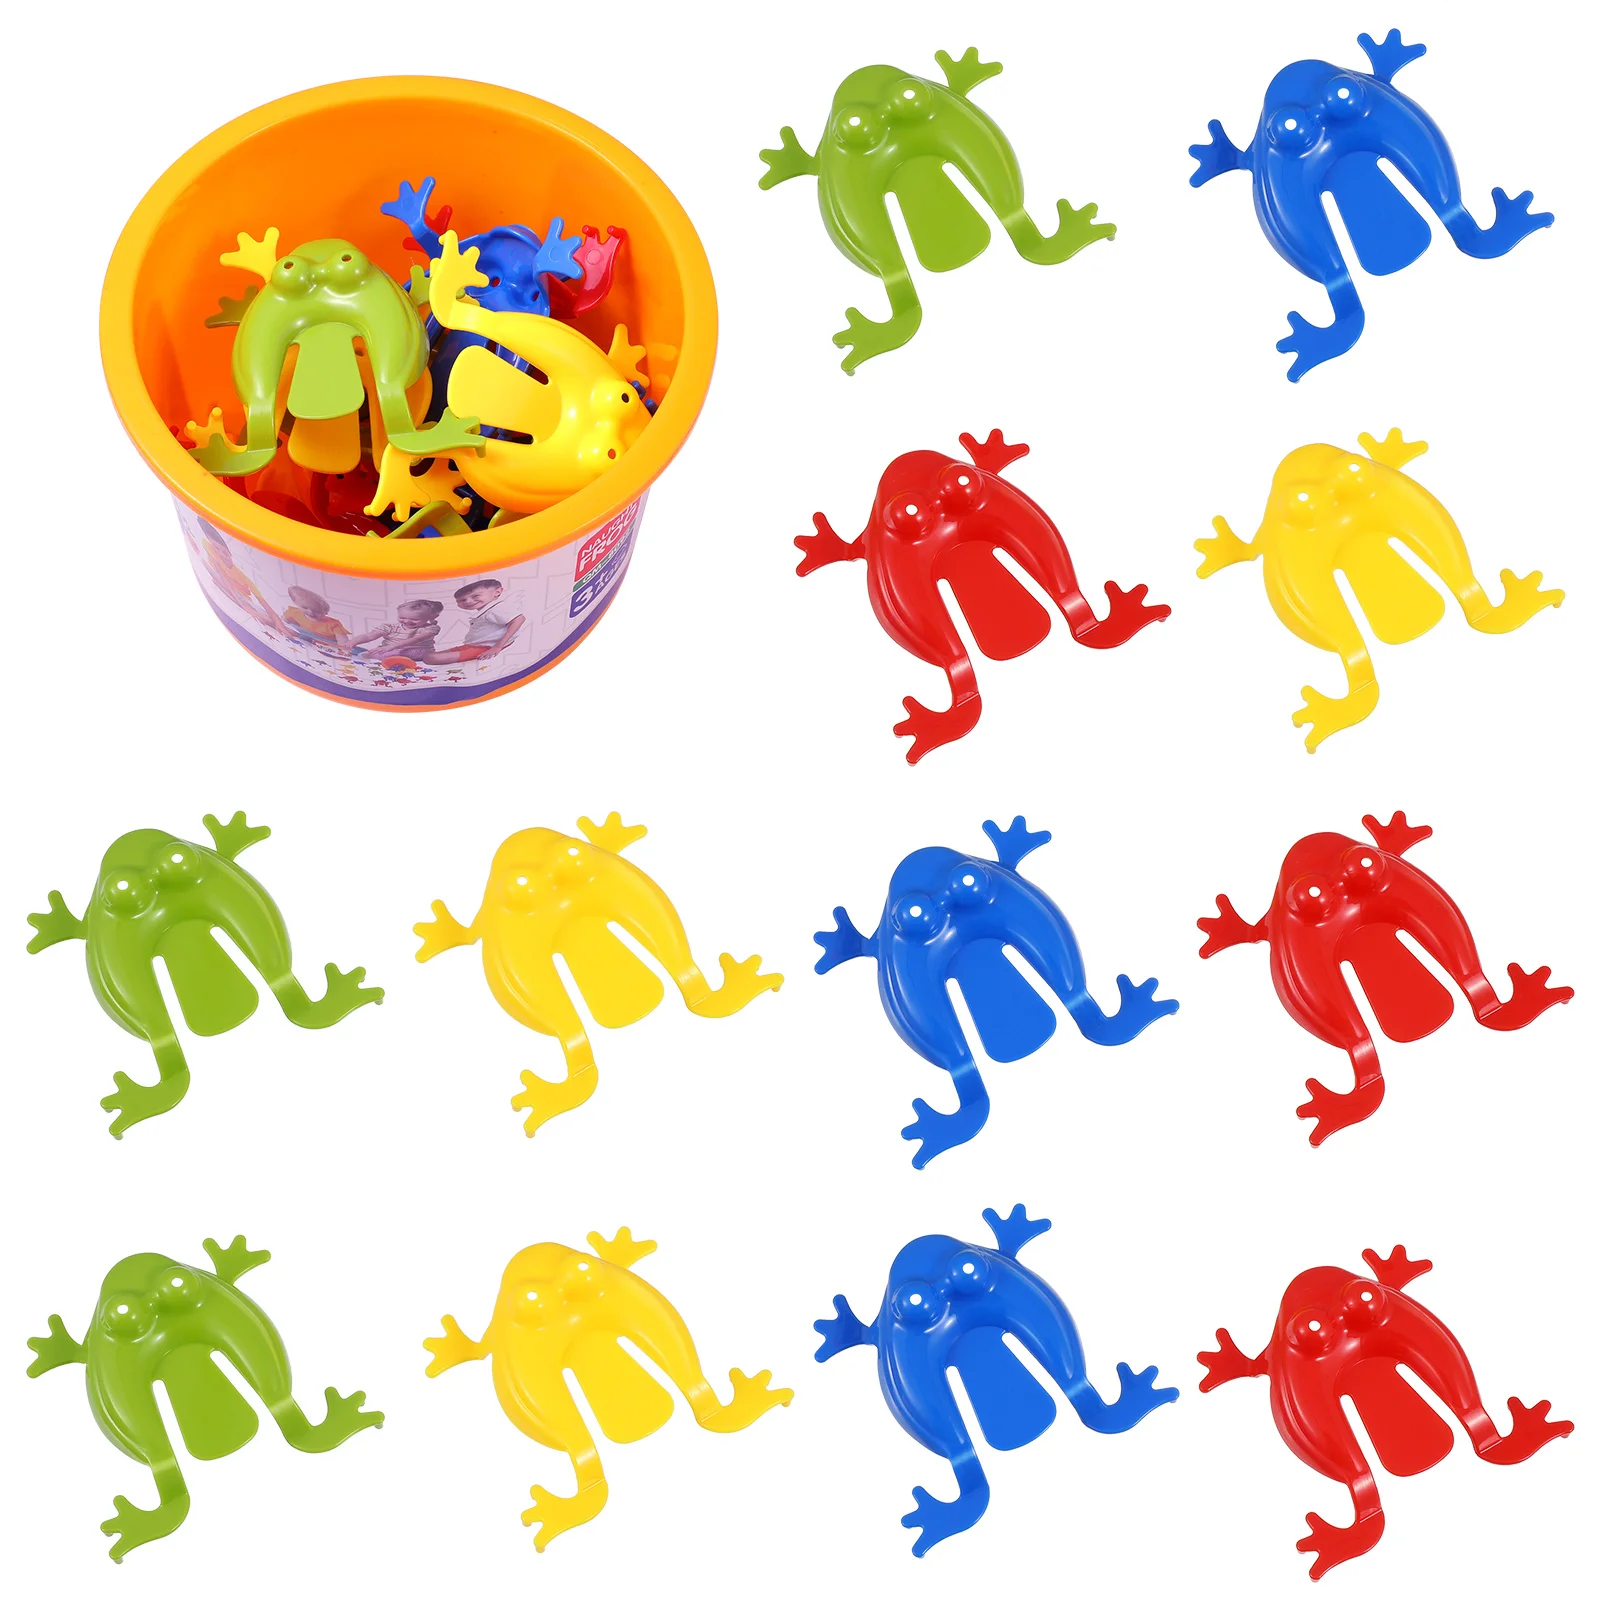 

Набор детских игрушек для прыжков с ведром разных цветов